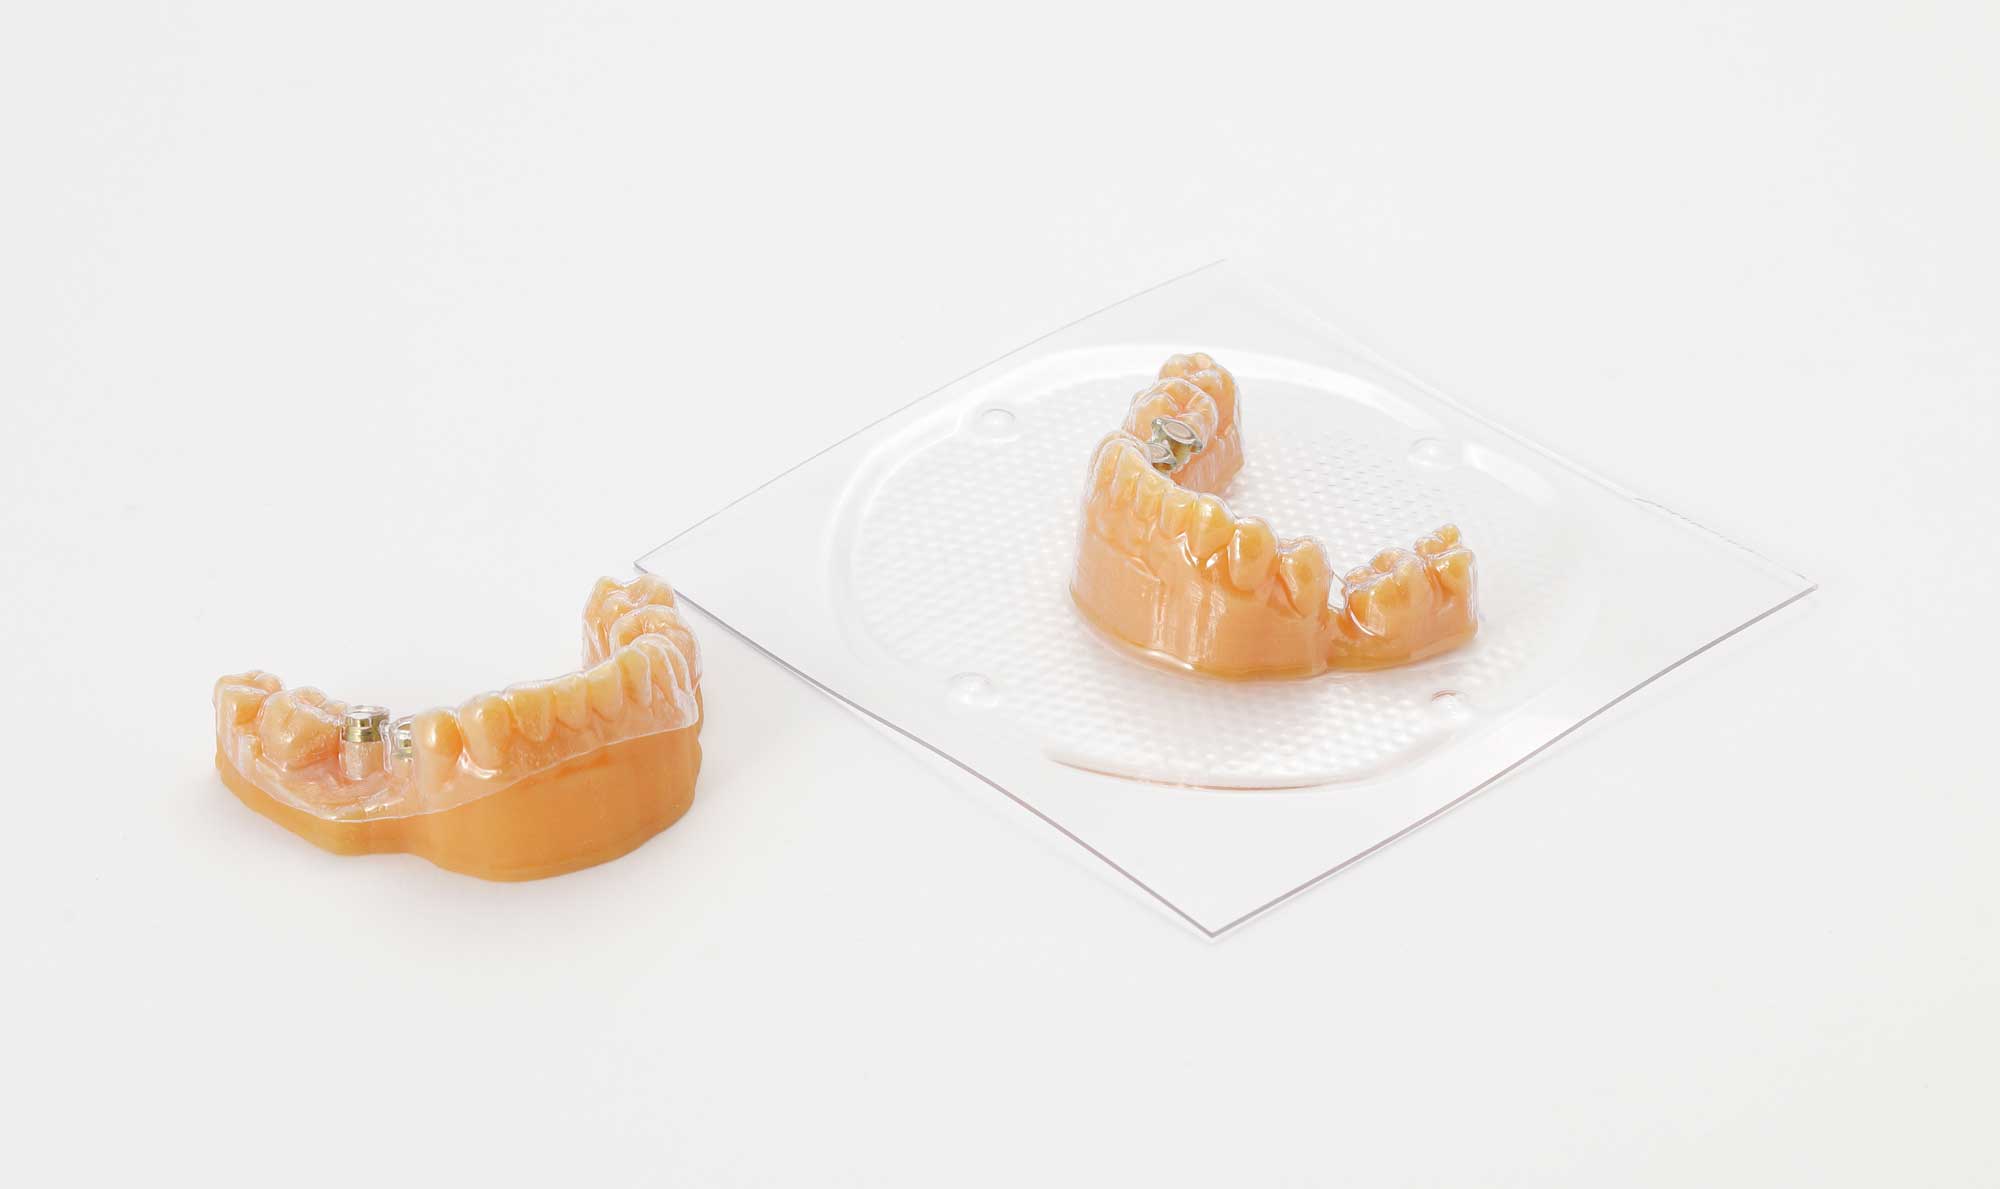 Inicjalizujące stomatologiczne szablony chirurgiczne wyprodukowane metodą próżniową i druku 3D